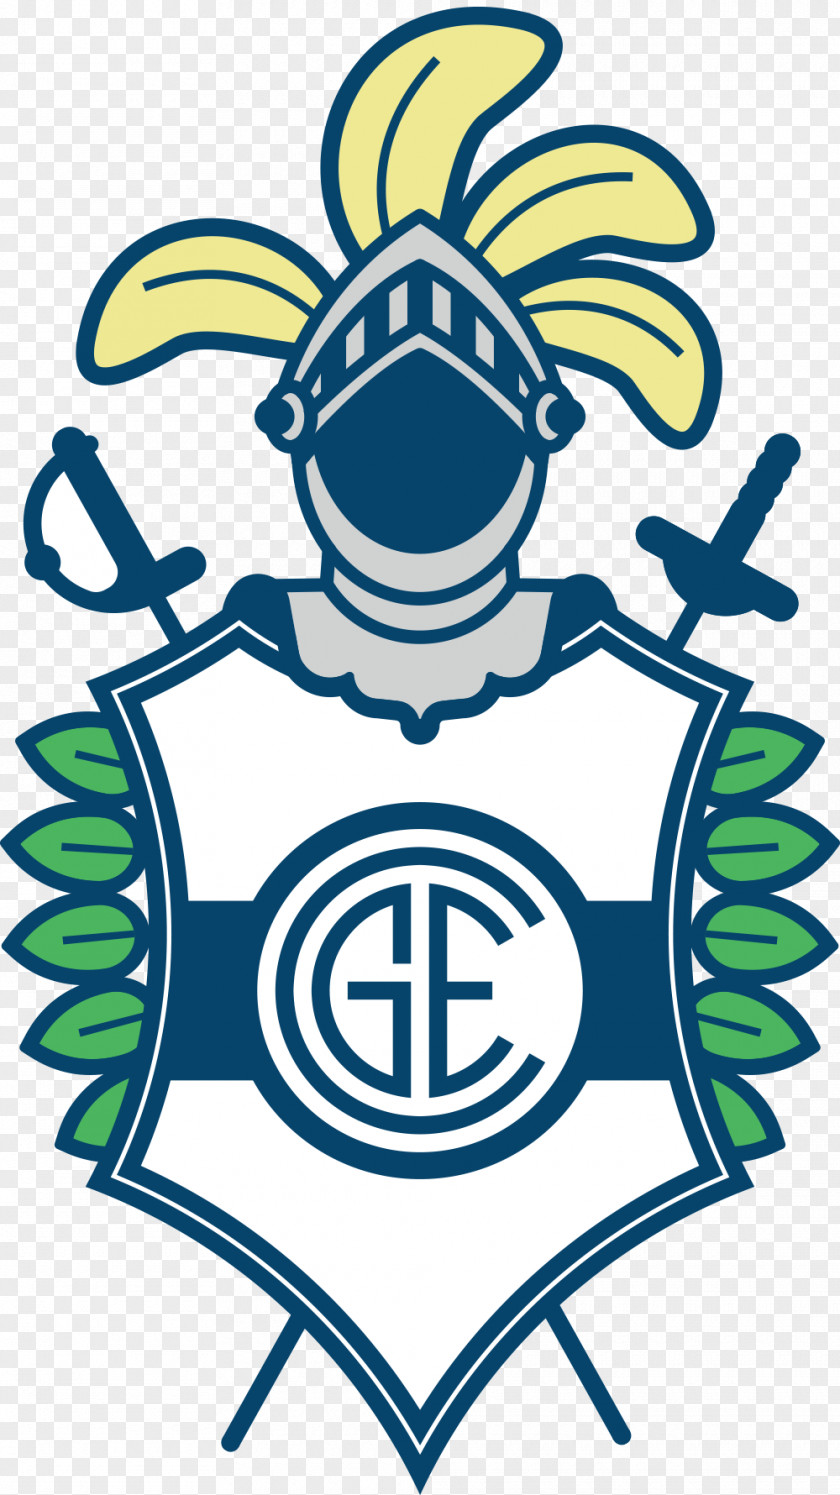 Design Club De Gimnasia Y Esgrima La Plata Polideportivo Logo Graphic PNG